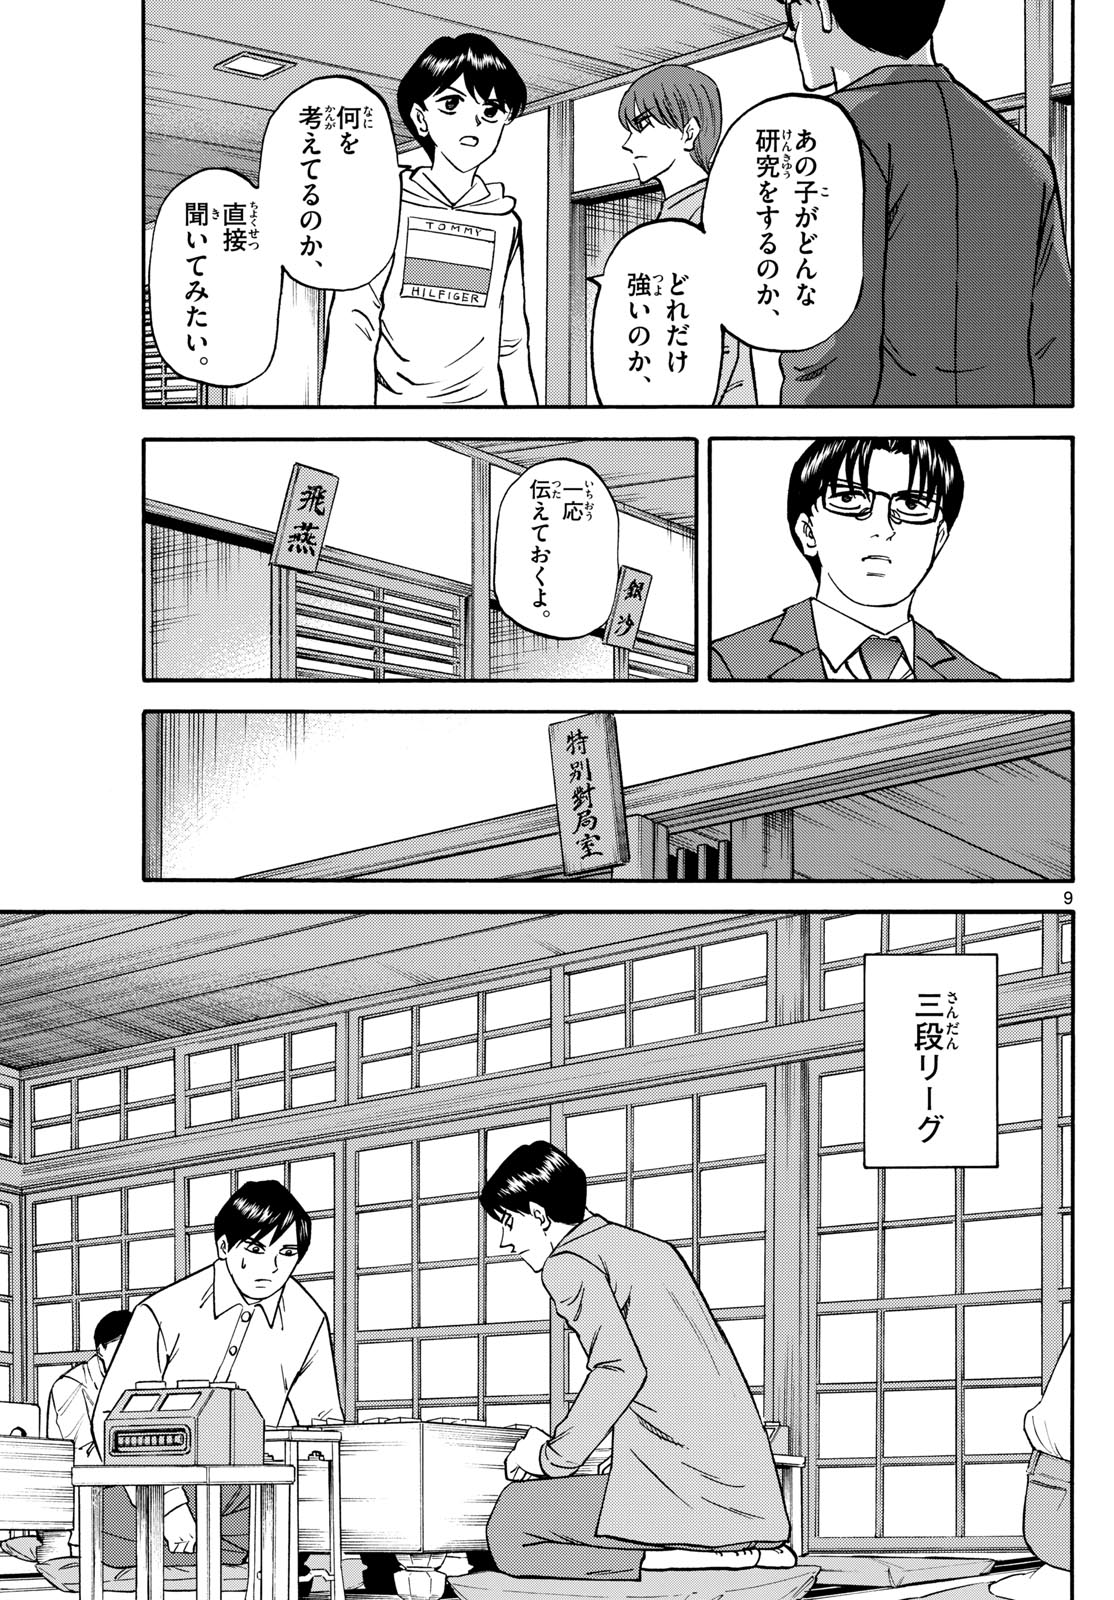 Tatsu to Ichigo - Chapter 172 - Page 9